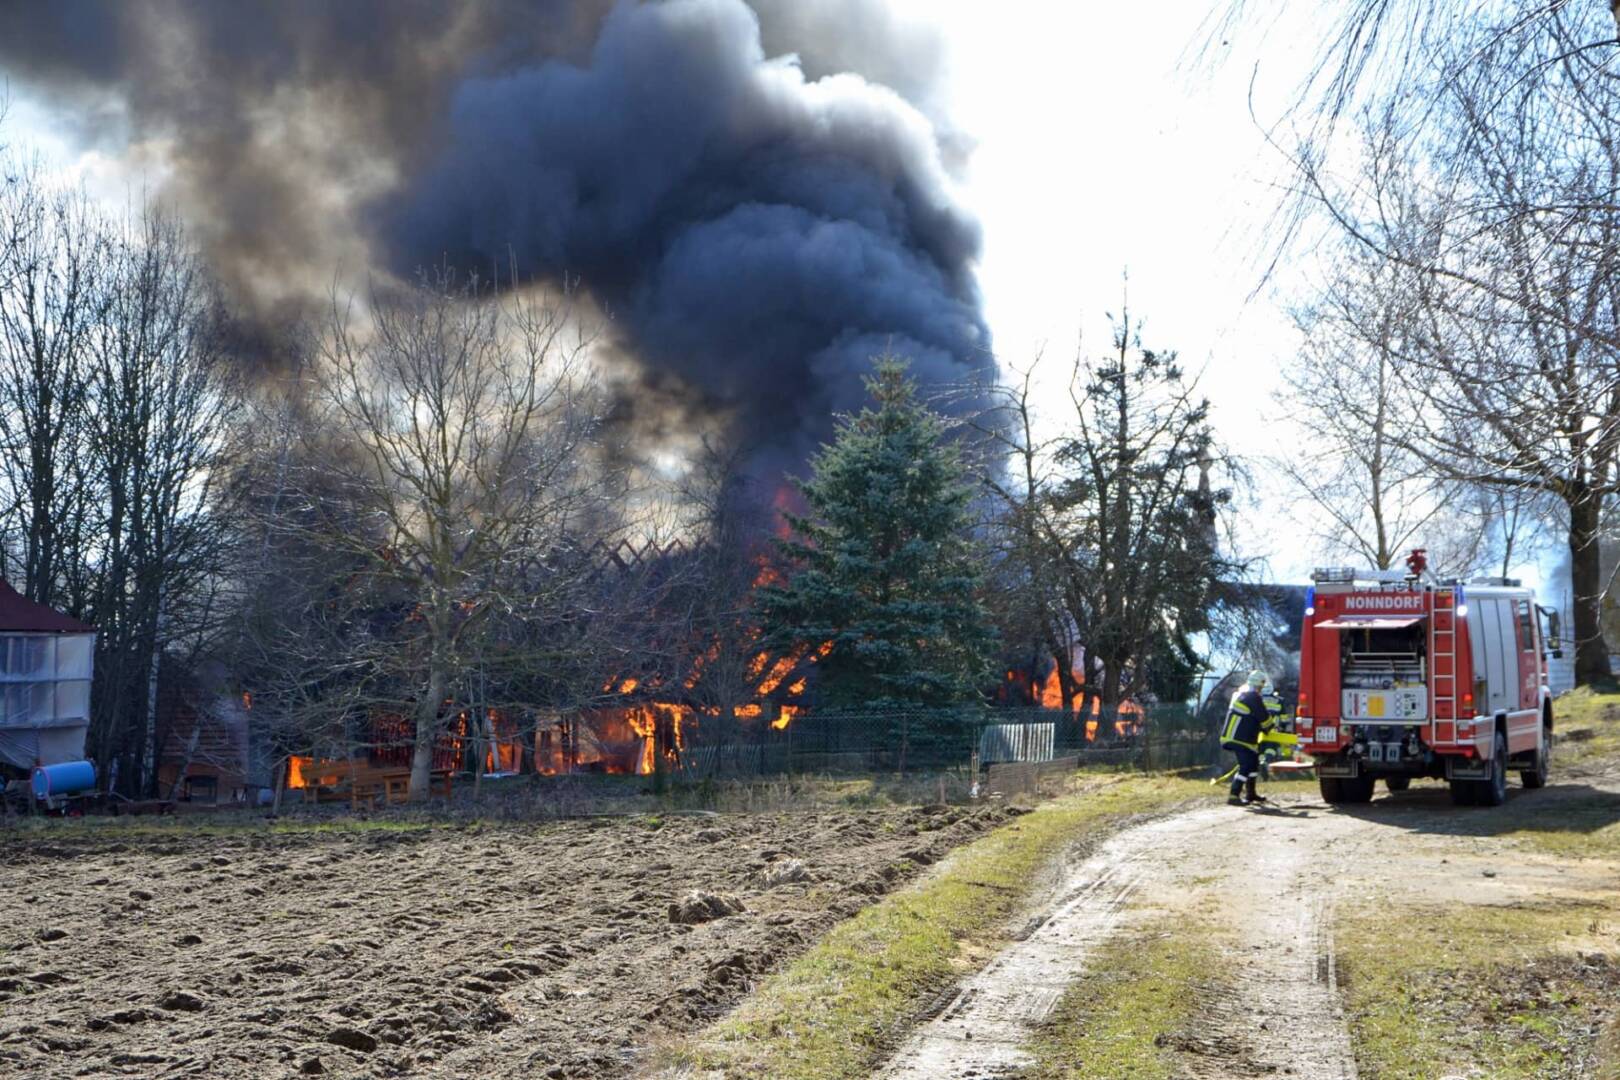 Großbrand in Kainraths fordert 140 Feuerwehrleute